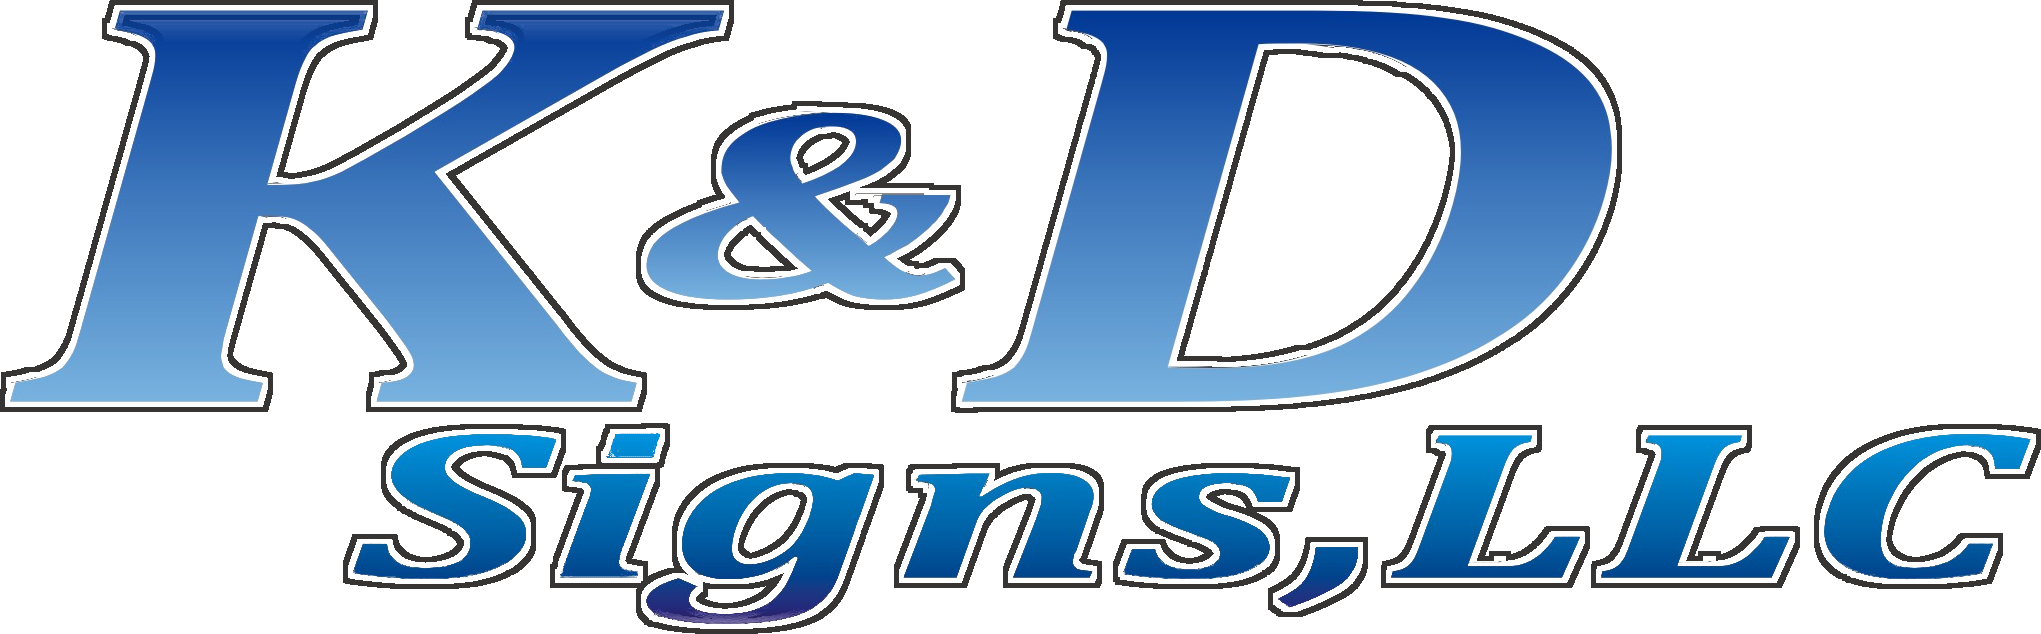 K&D Signs, LLC.png